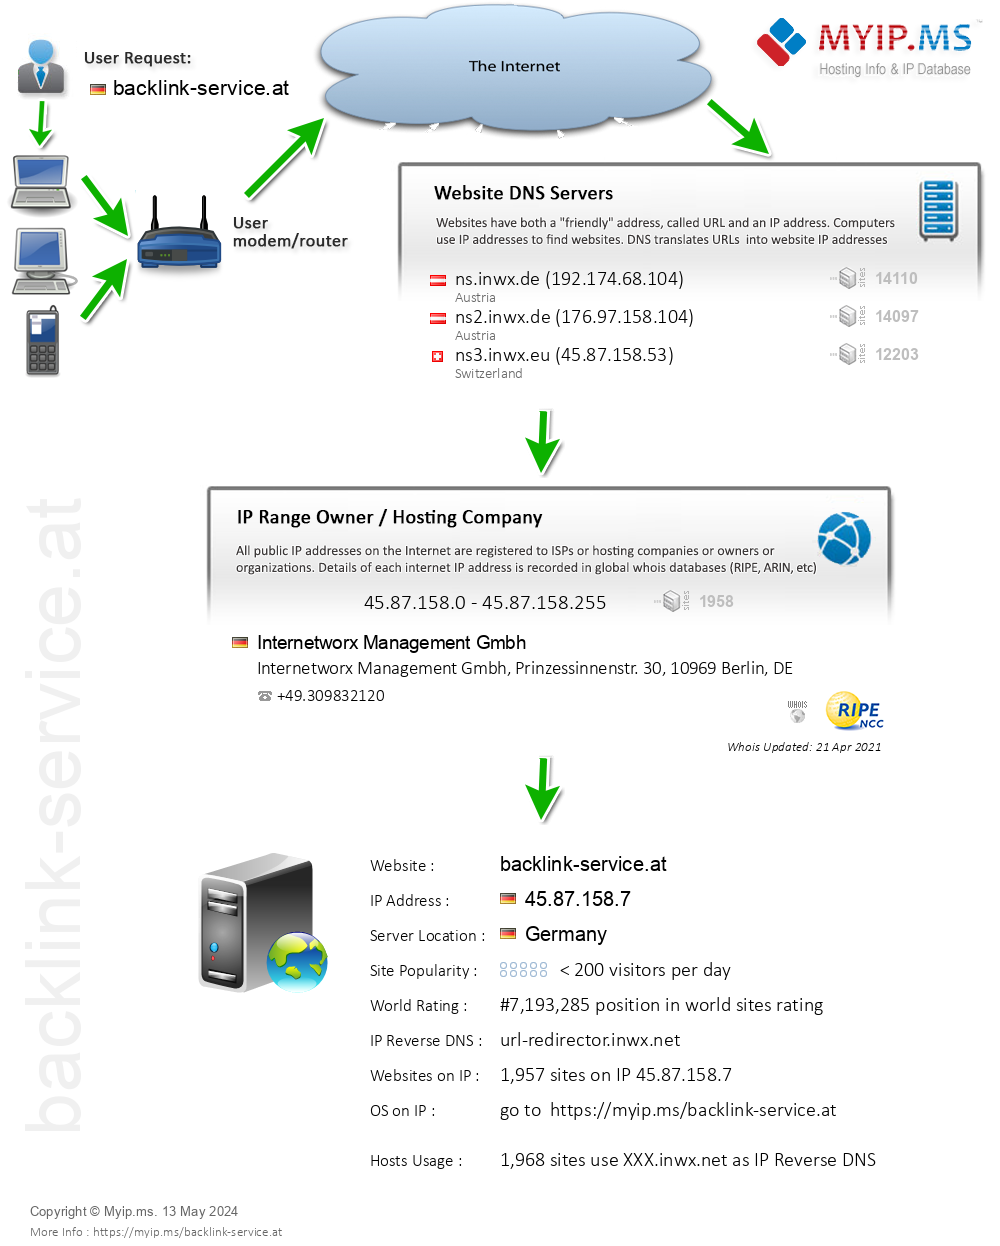 Backlink-service.at - Website Hosting Visual IP Diagram